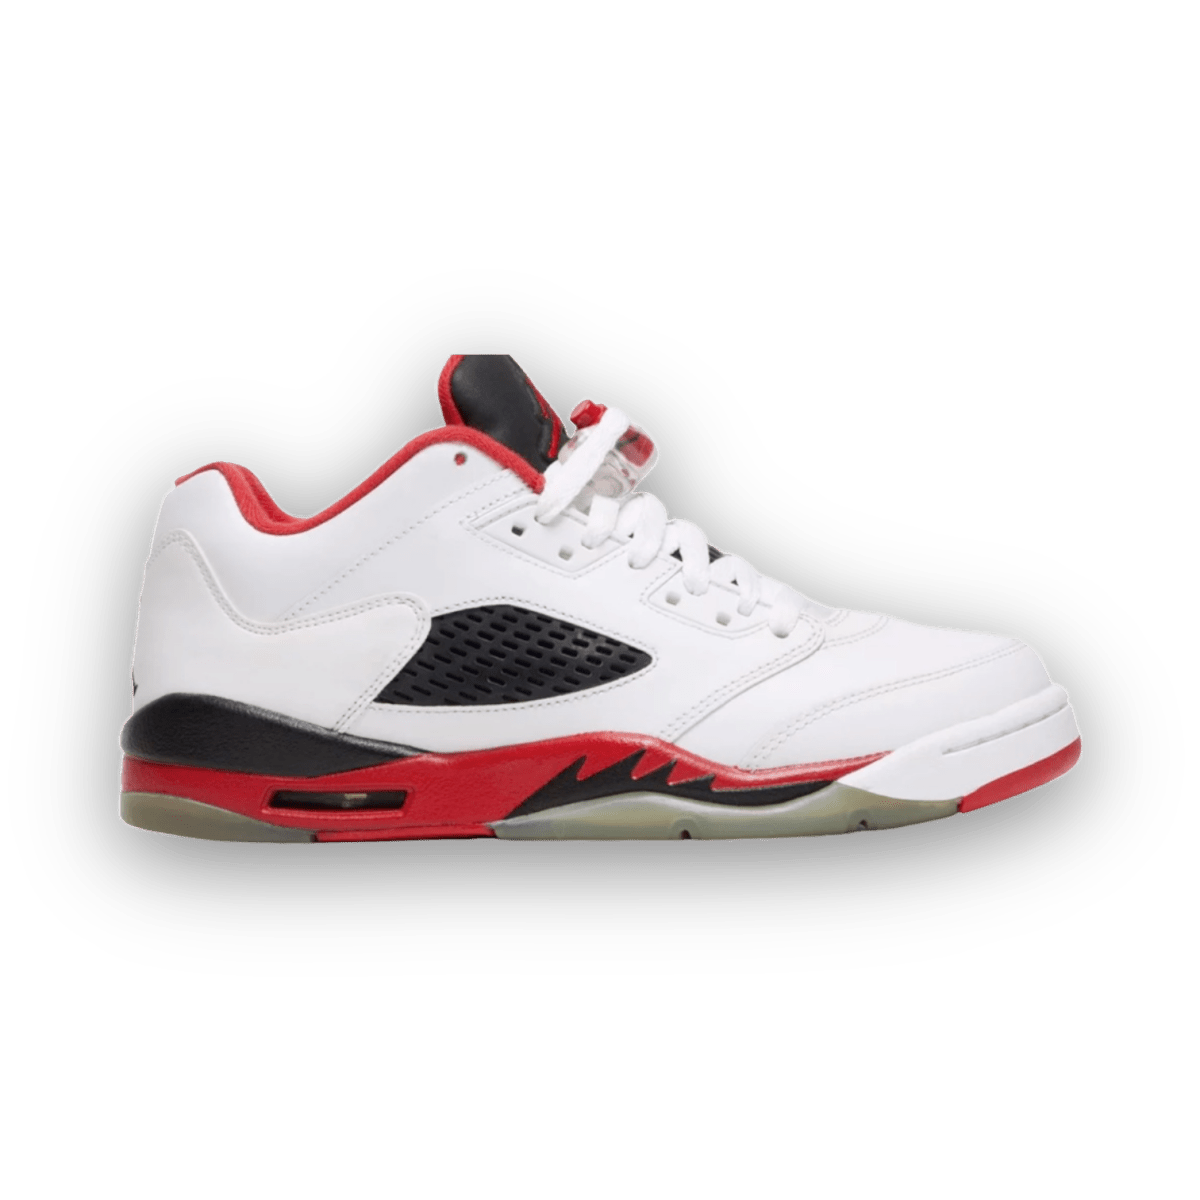 Air Jordan 5 Retro Low 'Fire Red' - Grade School - Mid Sneaker - Jawns on Fire Sneakers & Streetwear